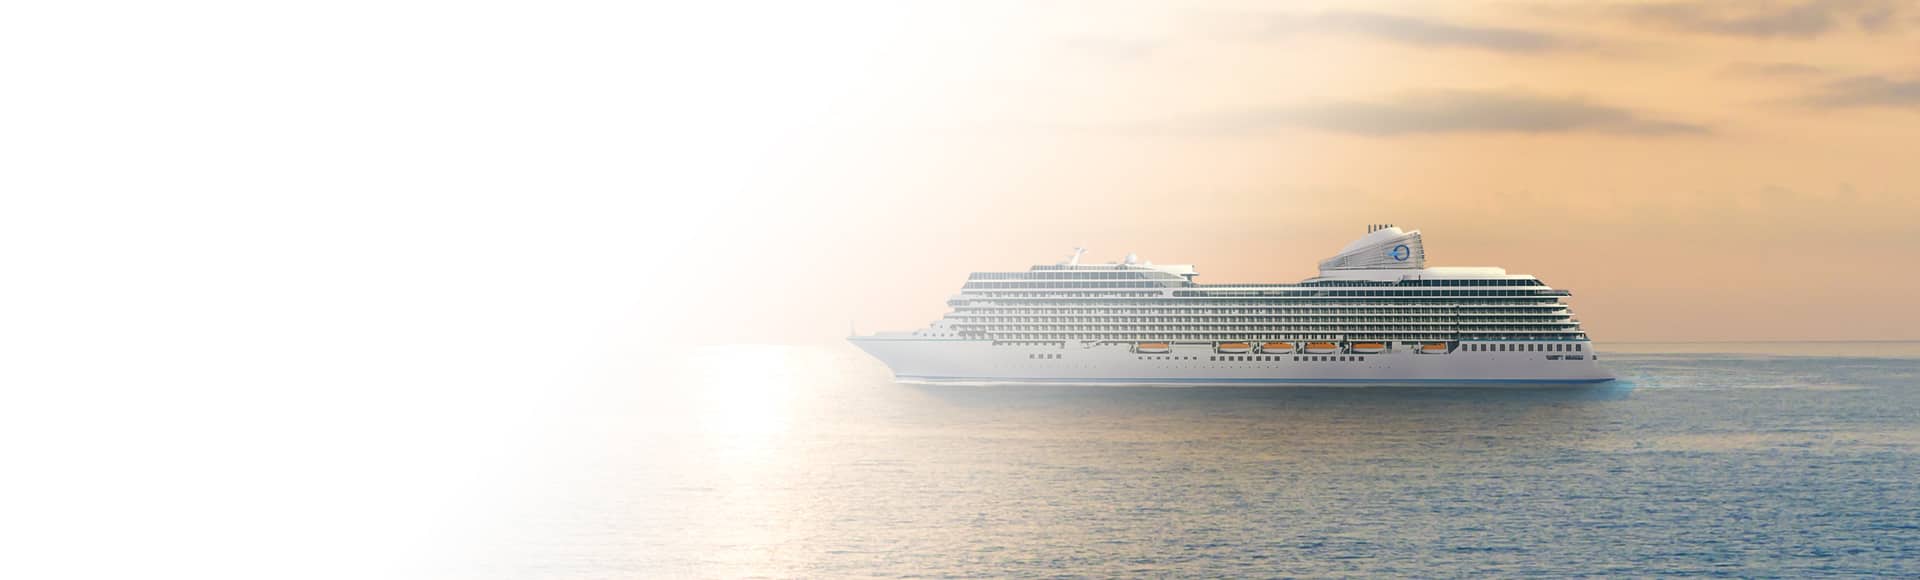 Oceania Cruises' Allura Ship